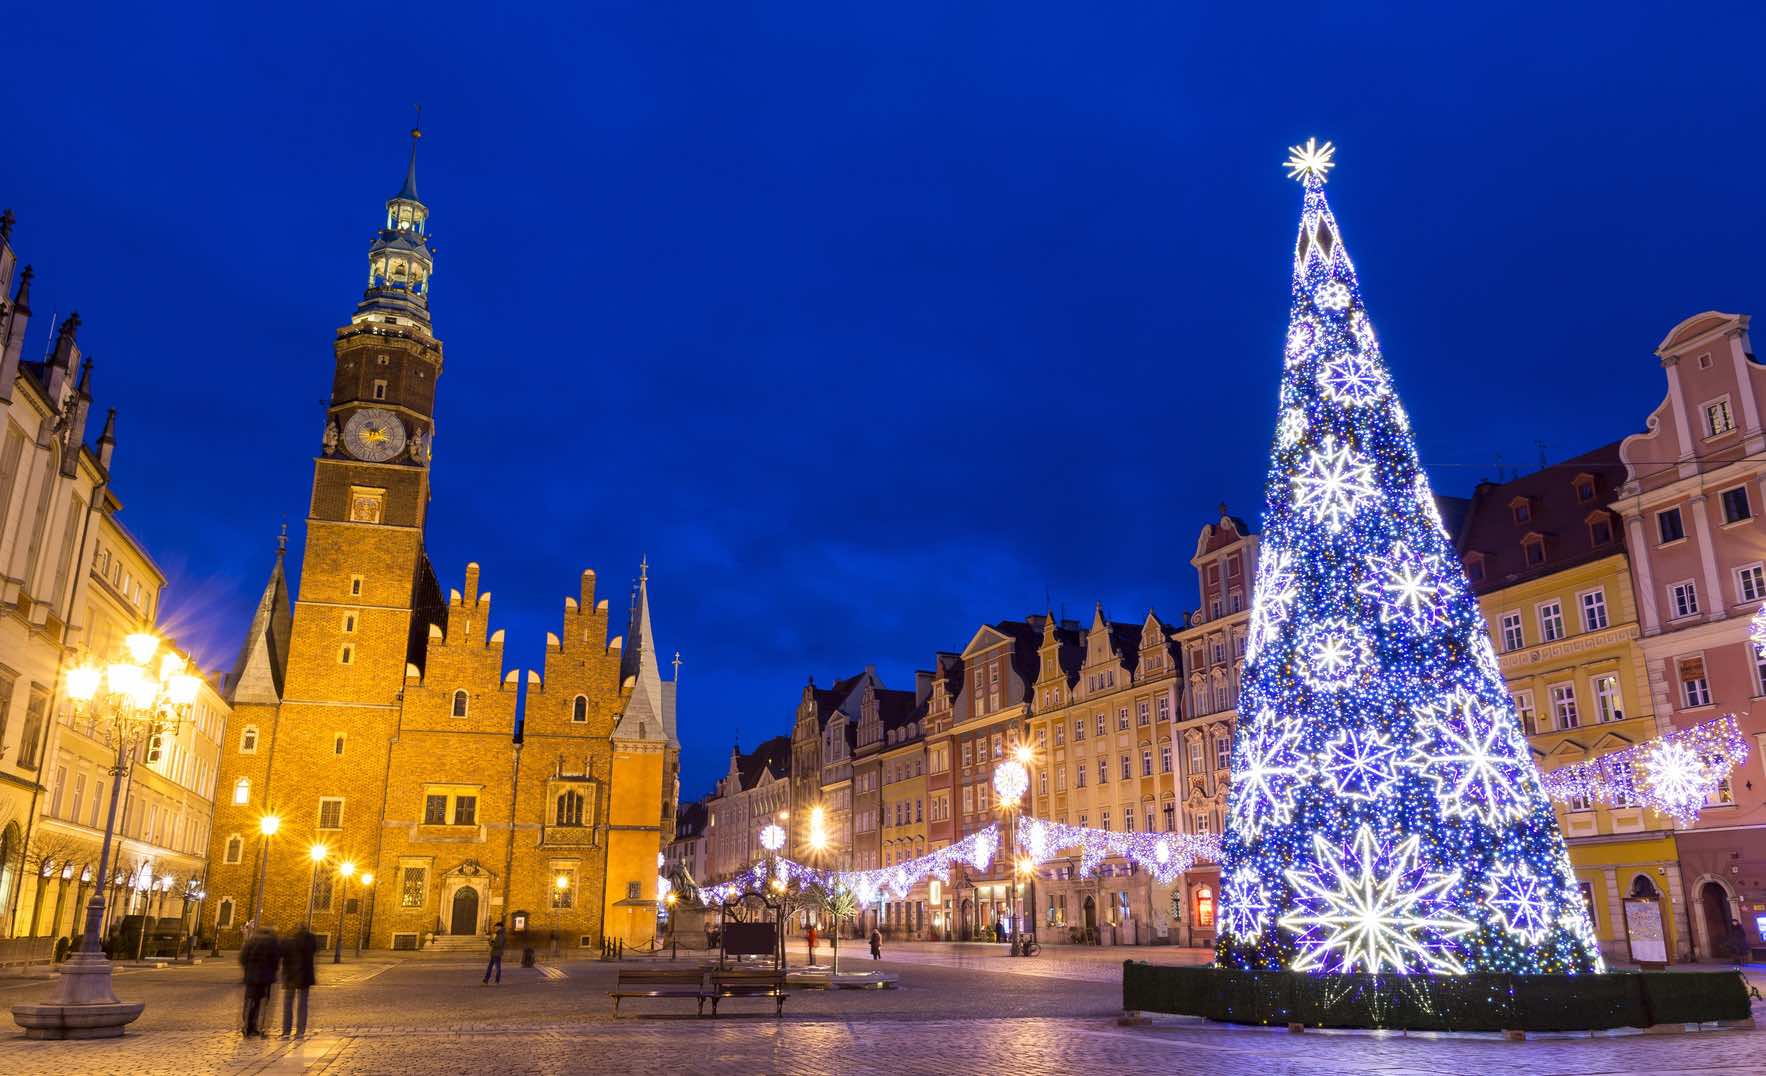 Dove Si Festeggia Il Natale.Il Natale In Polonia Come Si Festeggia Il Natale A Breslavia